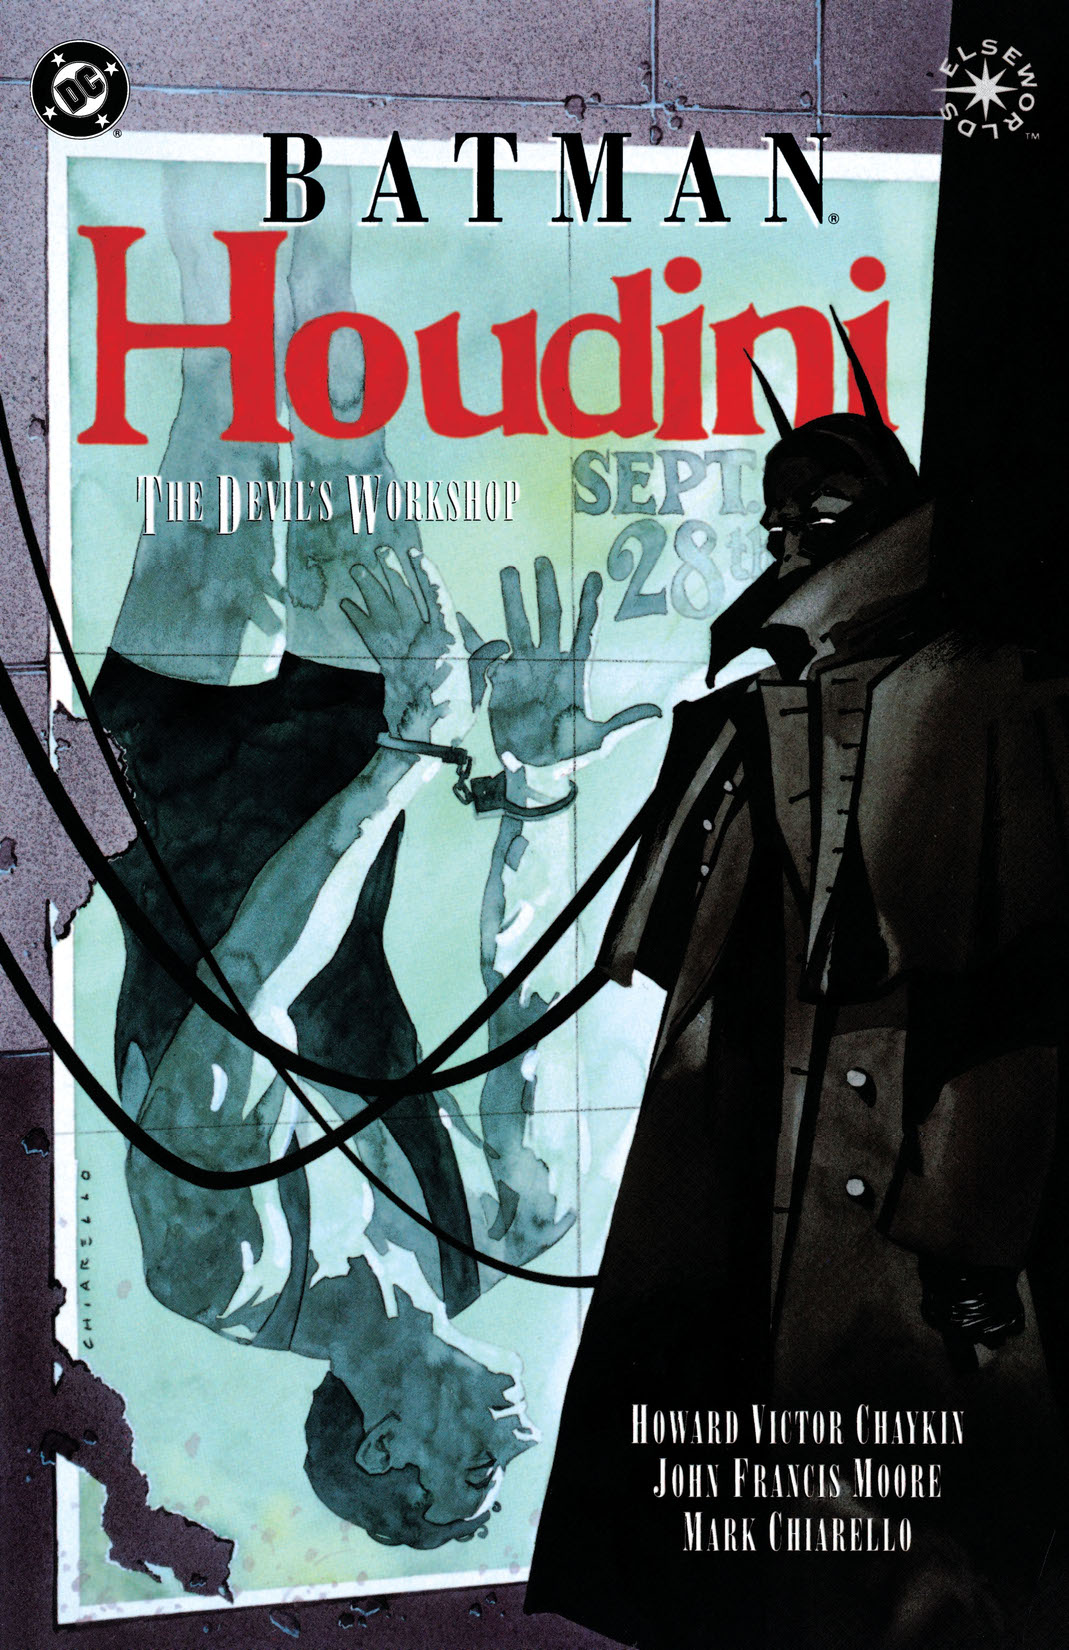 Batman/Houdini: The Devil's Workshop #1 preview images